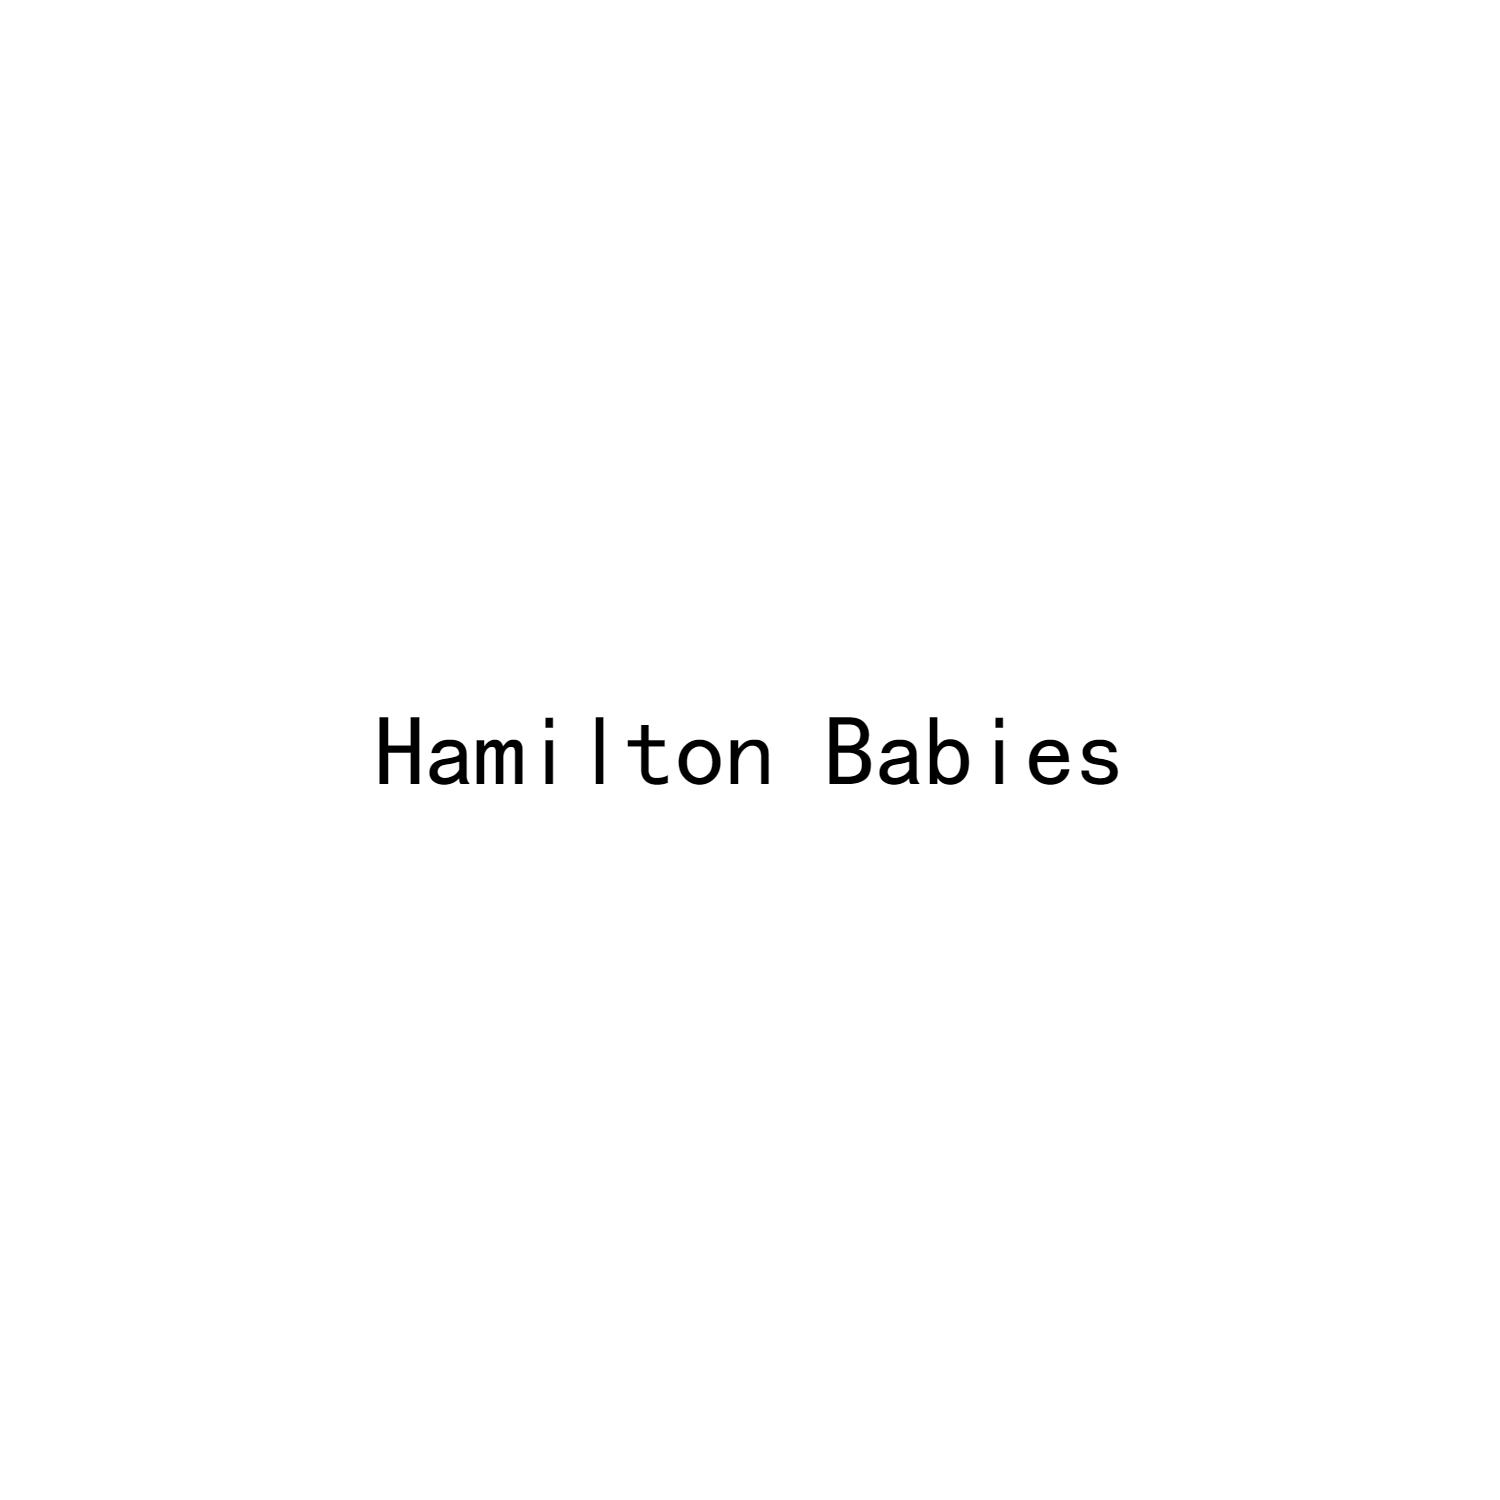 HAMILTON BABIES